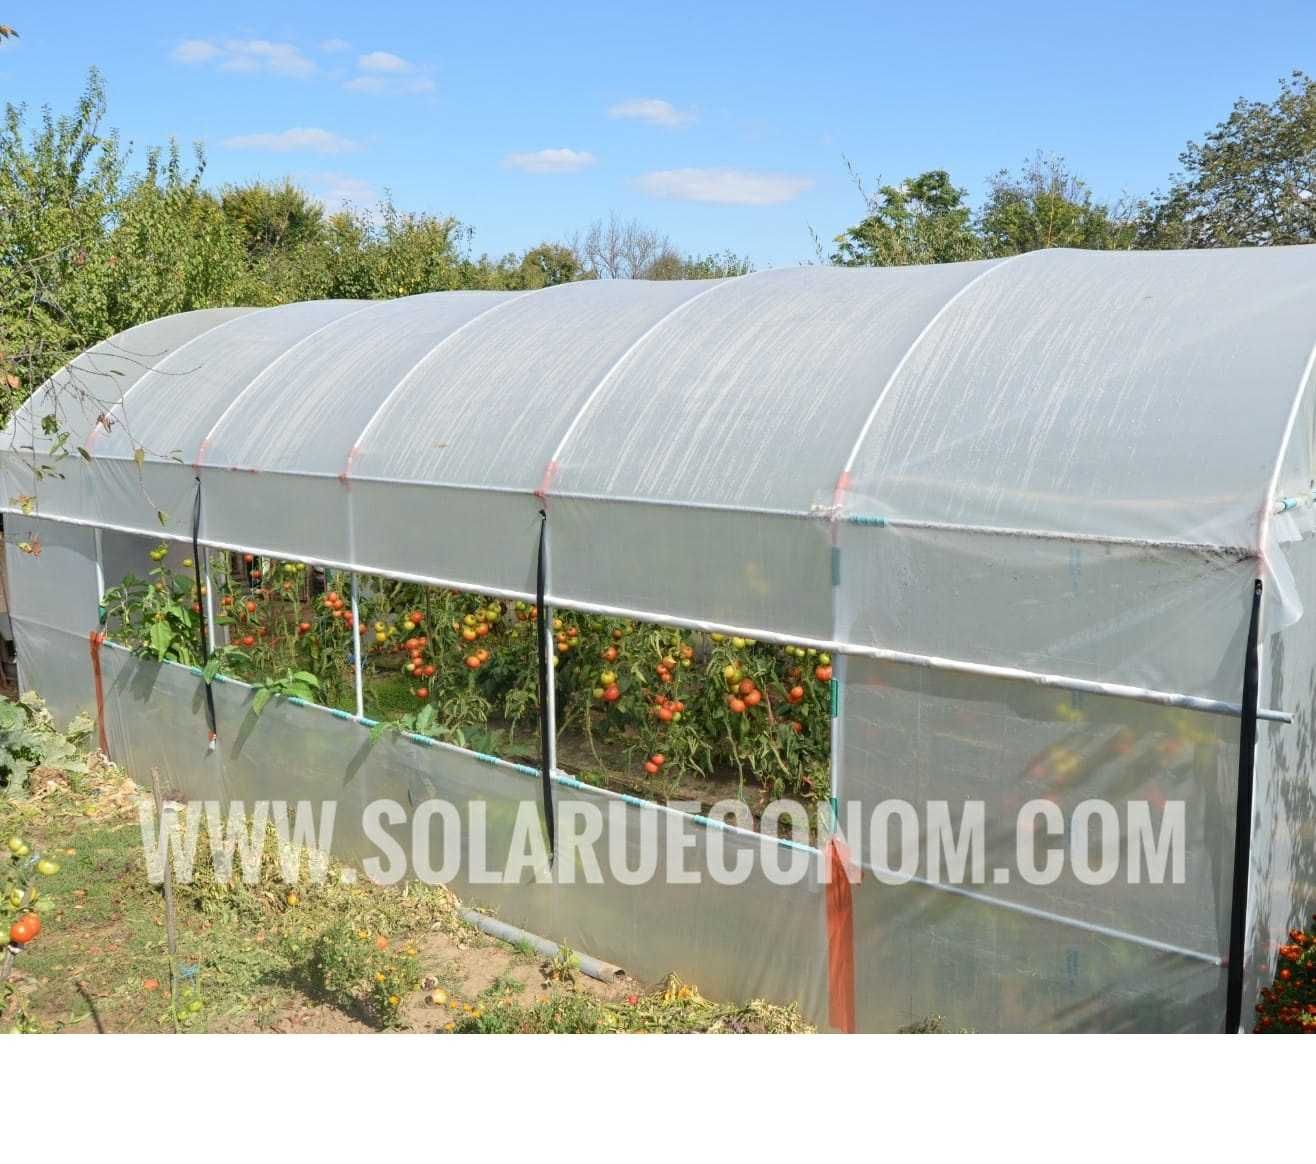 Solarii (sere) de gradina pentru cultivarea florilor sau legumelor